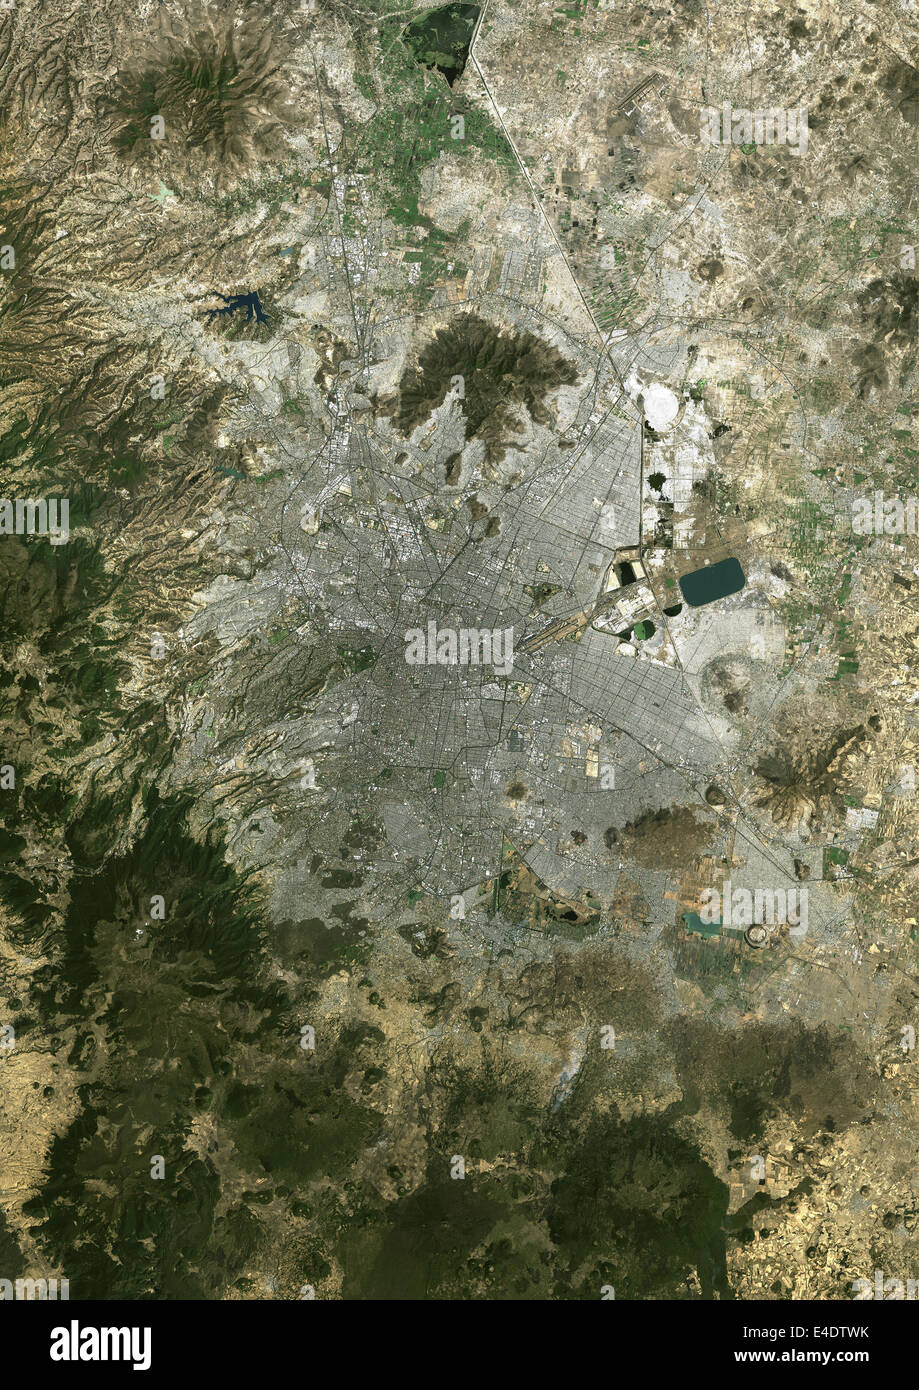 Ciudad de mexico map fotografías e imágenes de alta resolución - Alamy